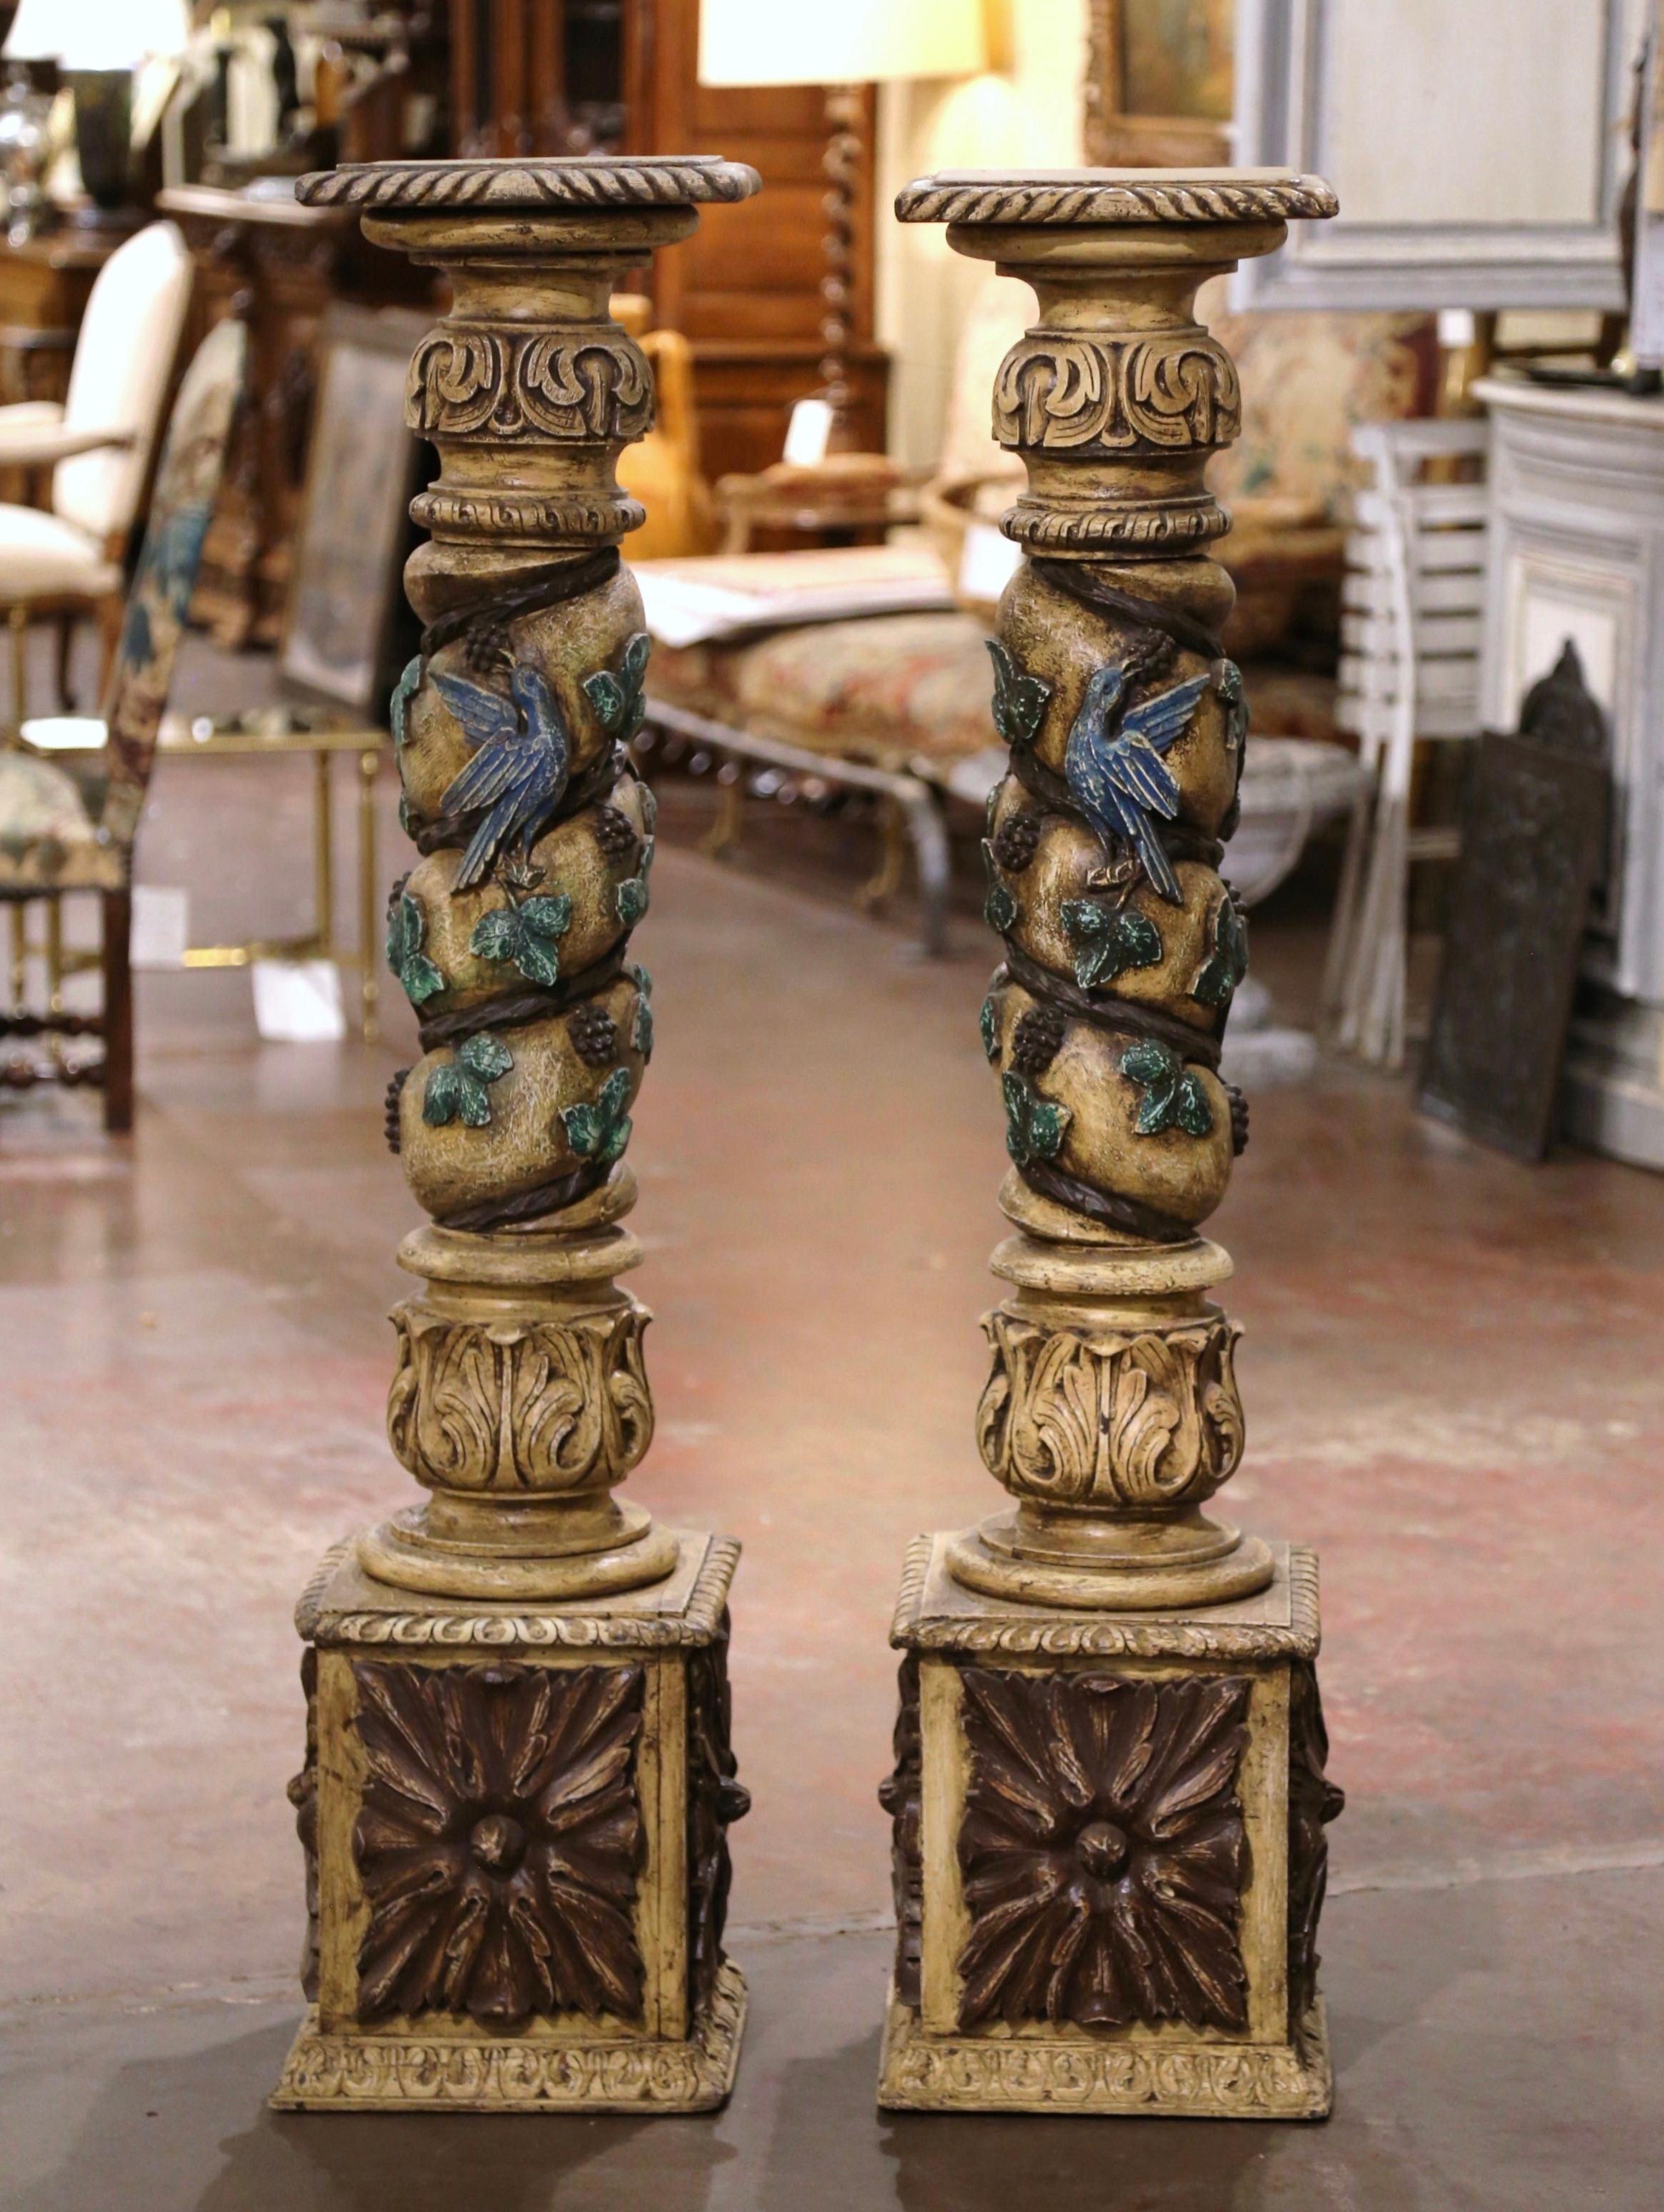 Décorez votre cave à vin avec ces colonnes anciennes et sculptées. Sculptées à la main en France, vers 1750, ces hautes sculptures peintes reposent sur une solide base carrée à la base et comportent une plaque arrondie au sommet pour accueillir tout